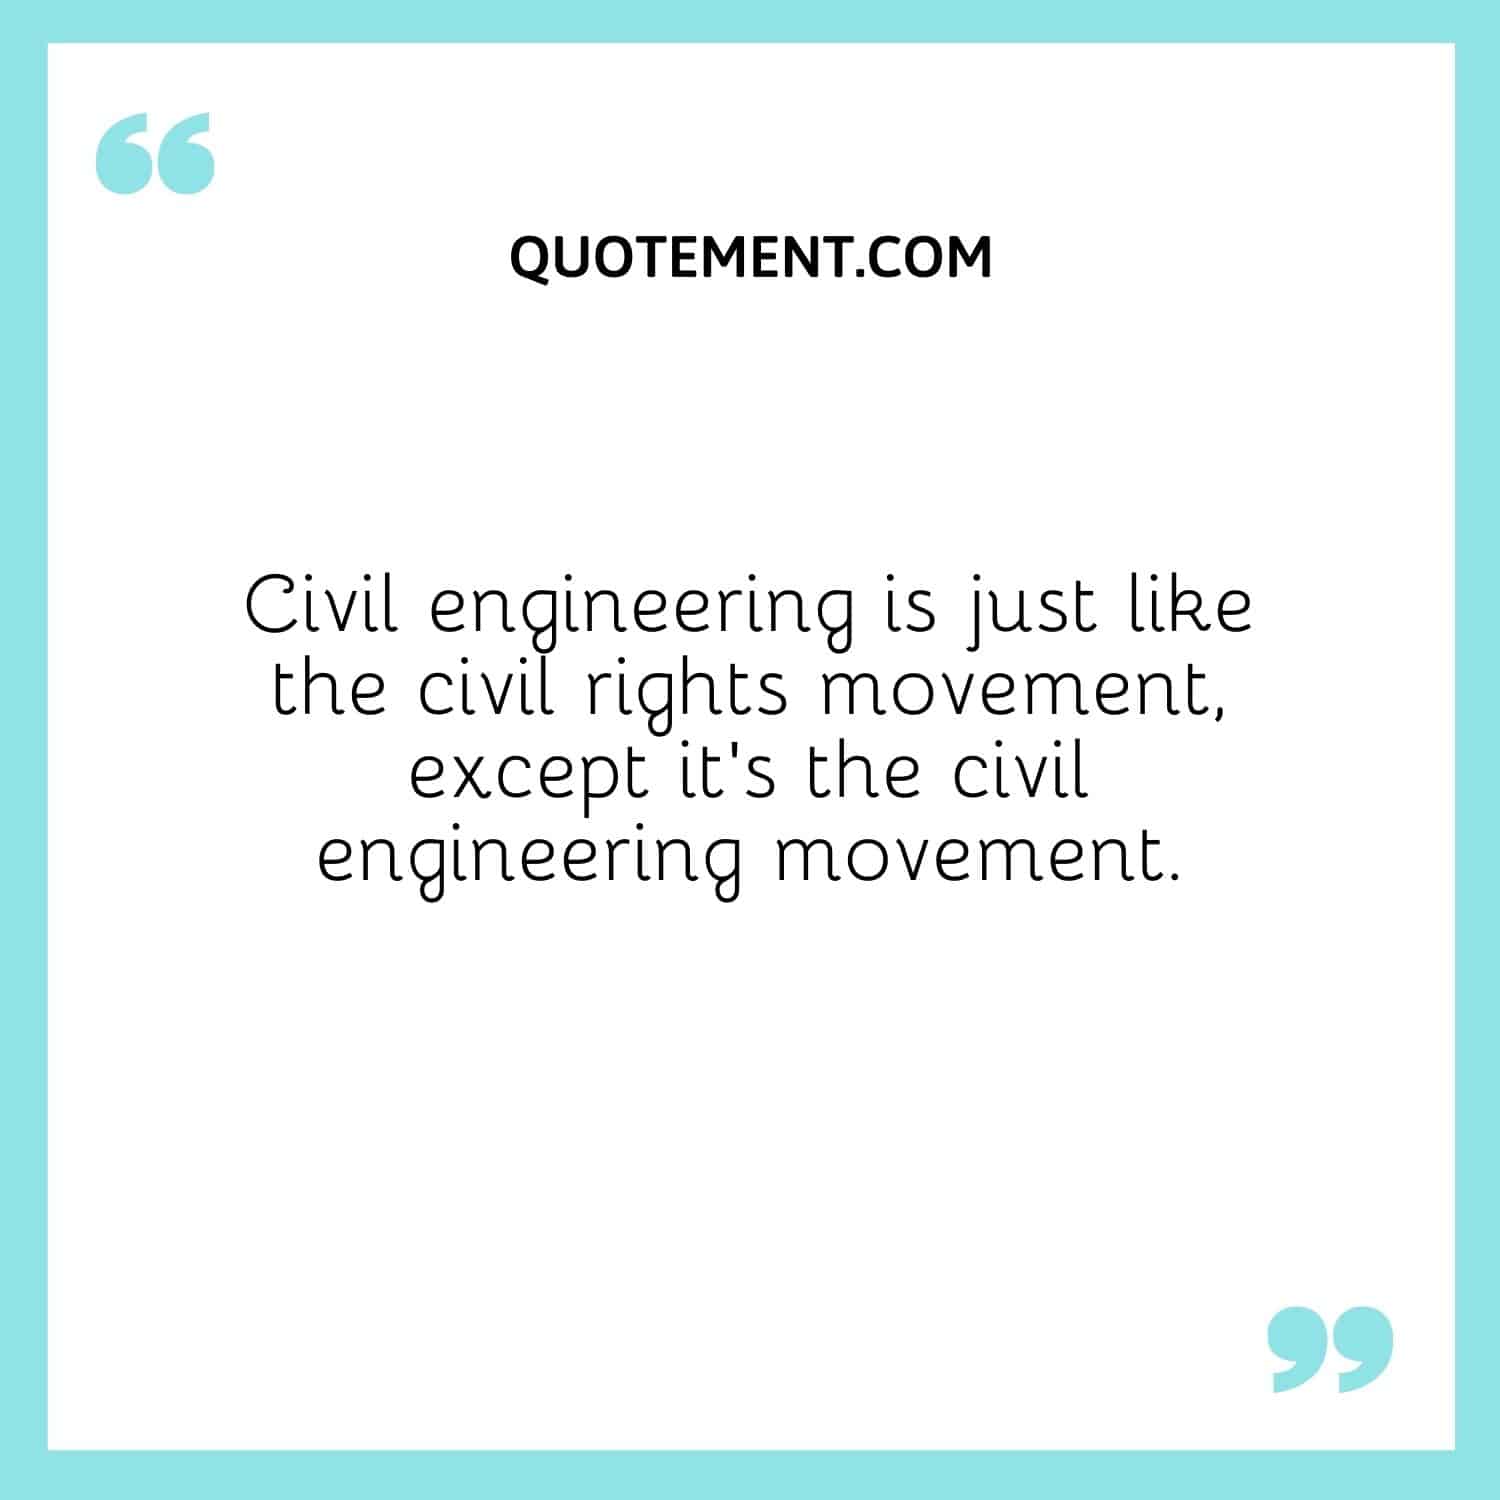 Civil engineering is just like the civil rights movement, except it’s the civil engineering movement.